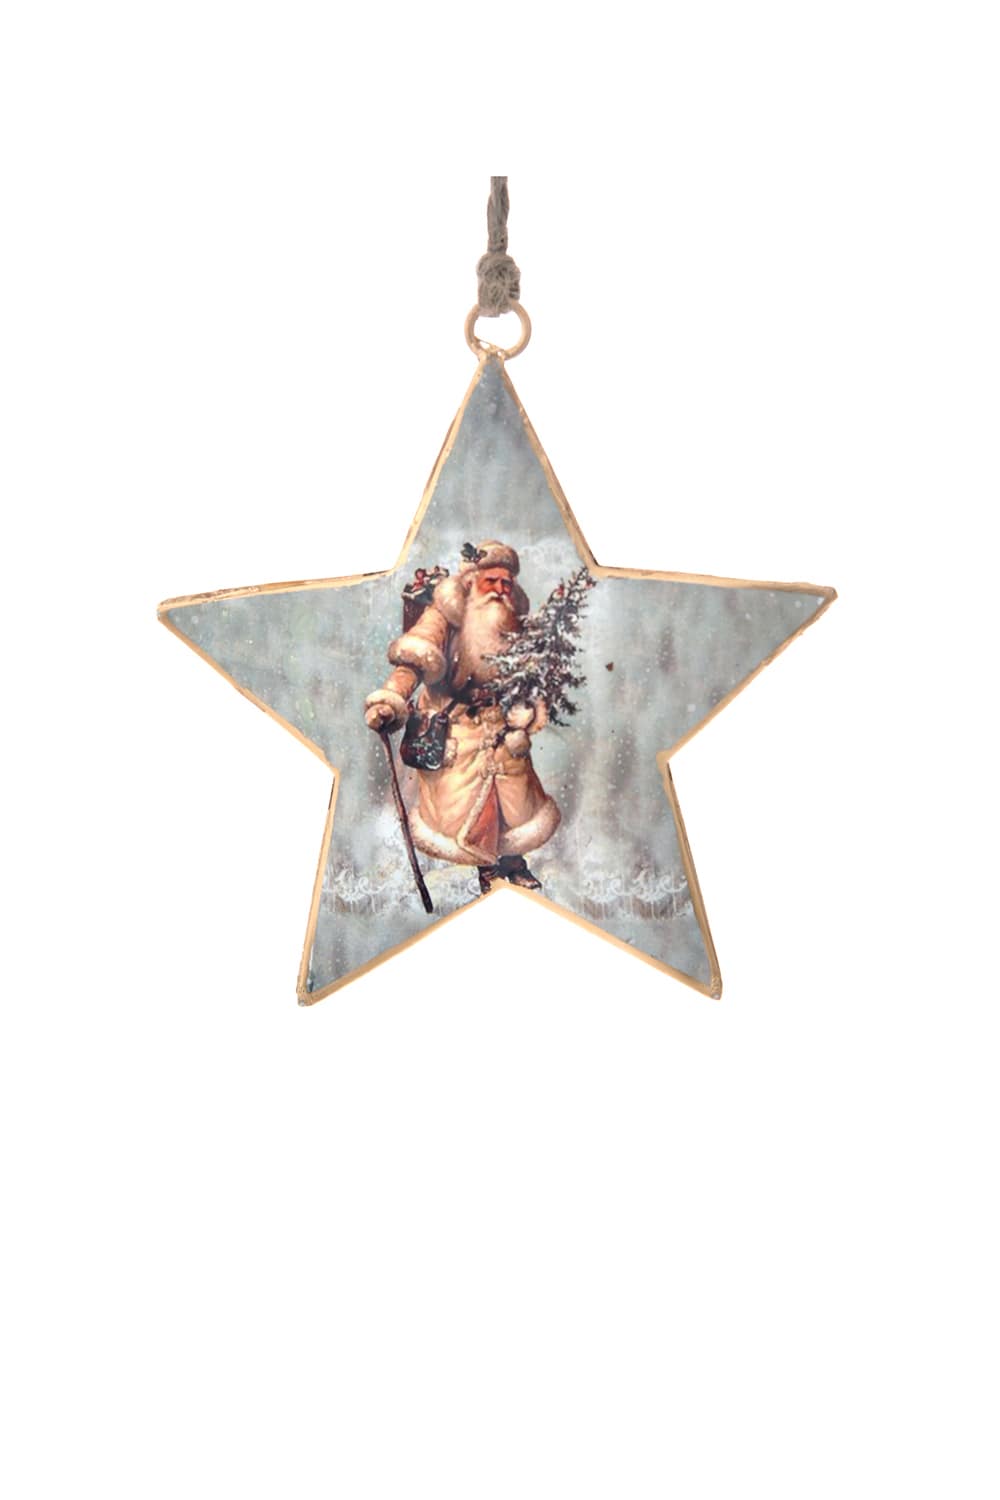 Athome Pavloudakis - Χριστουγεννιάτικο πολύχρωμο μεταλλικό στολίδι αστέρι με Αγ. Βασίλη (10 cm)